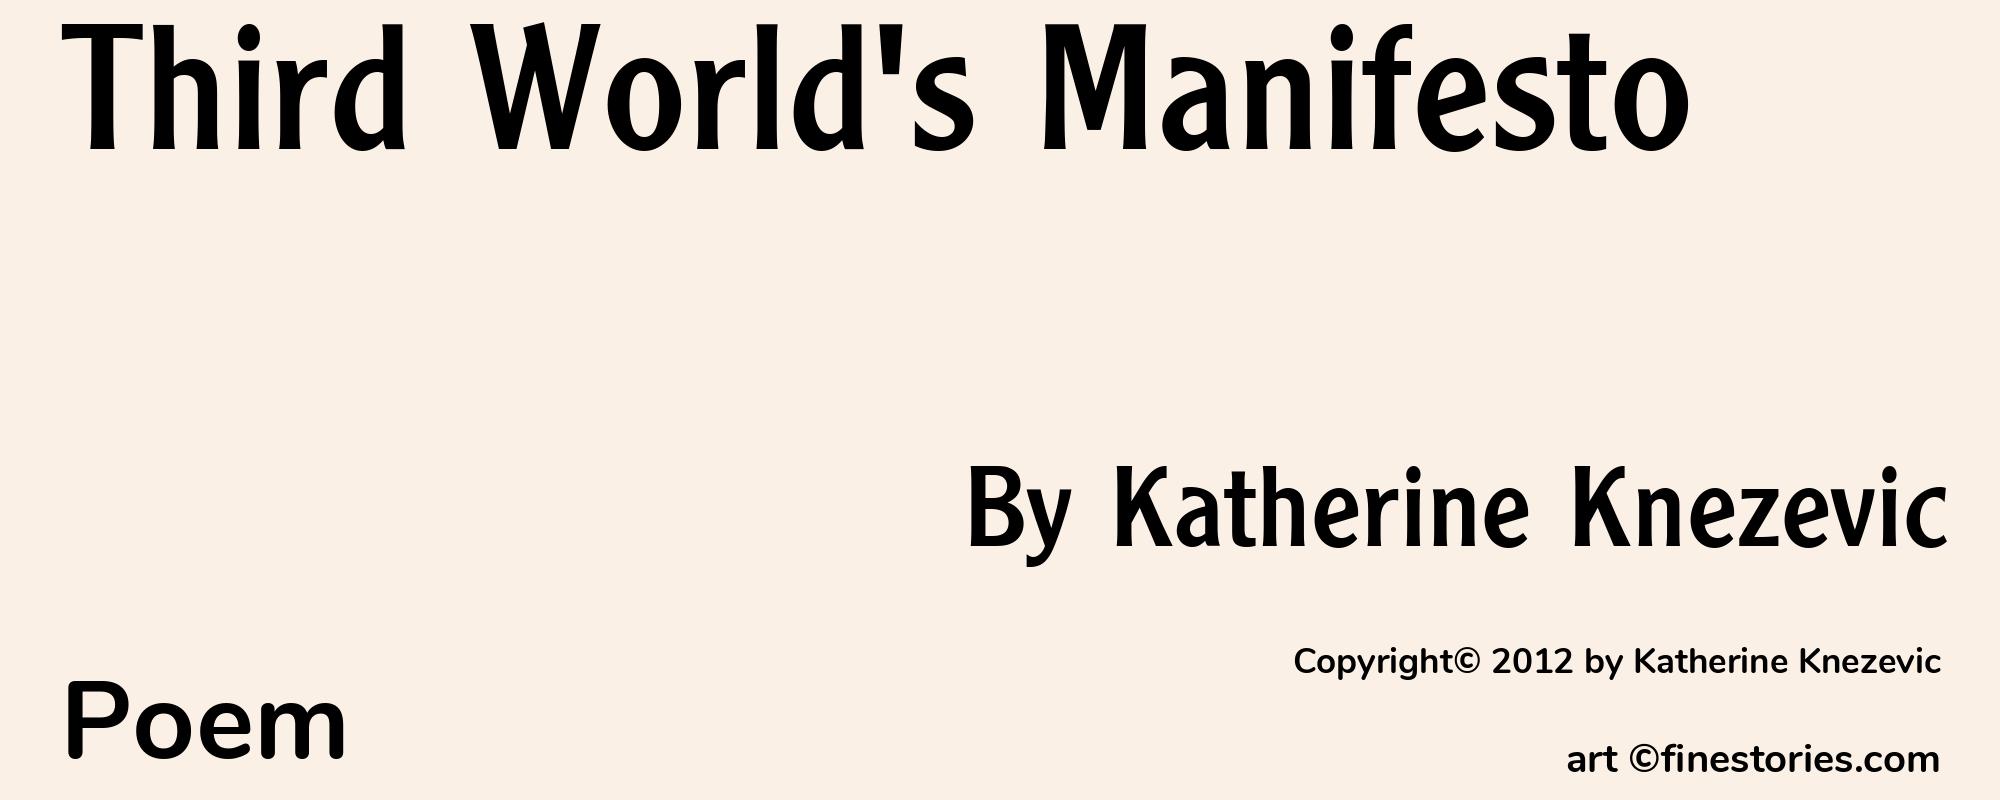 Third World's Manifesto - Cover